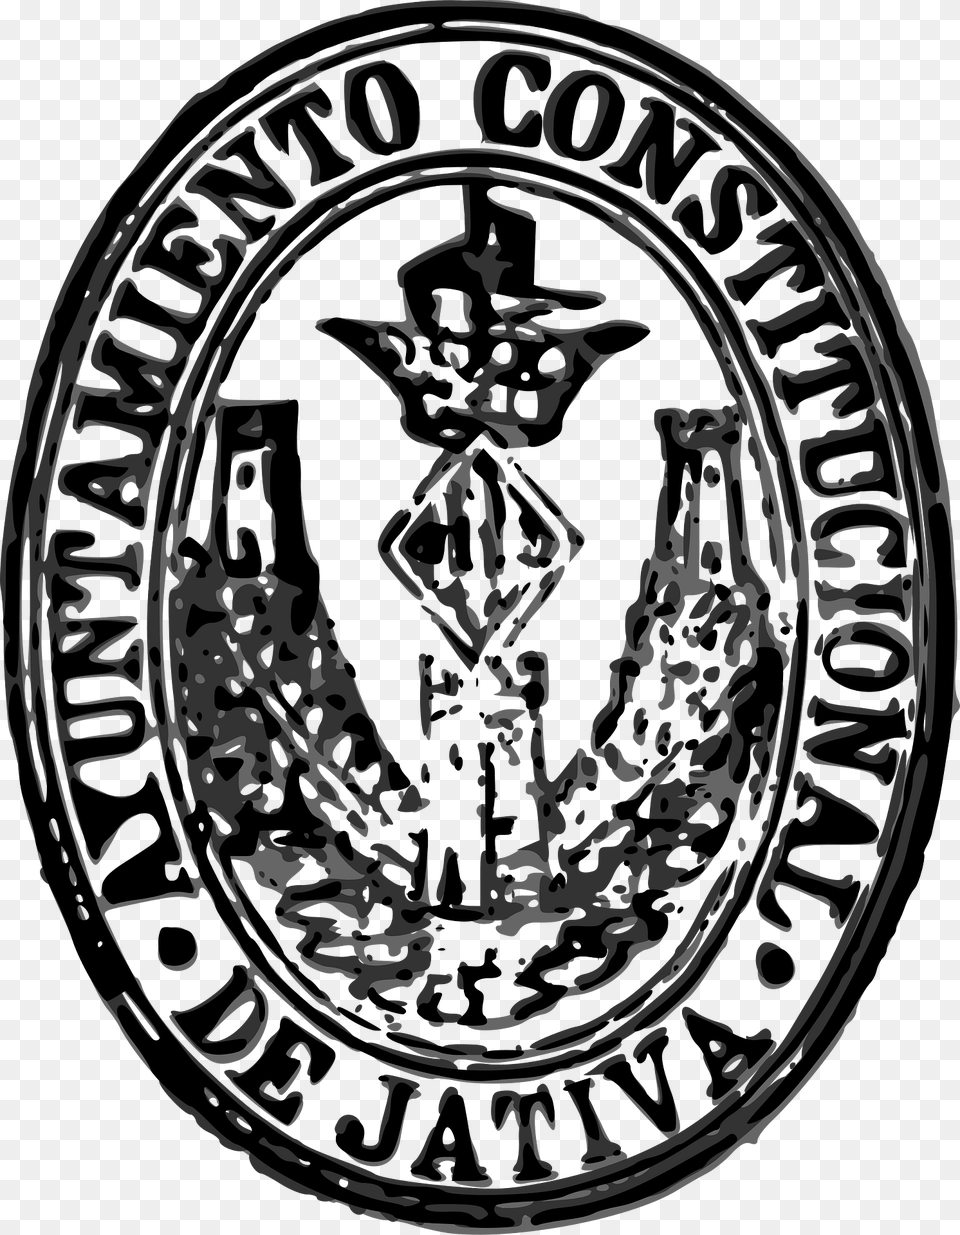 Segell De L39ajuntament De Xtiva 1904 Clipart, Logo, Emblem, Symbol, Badge Free Png Download